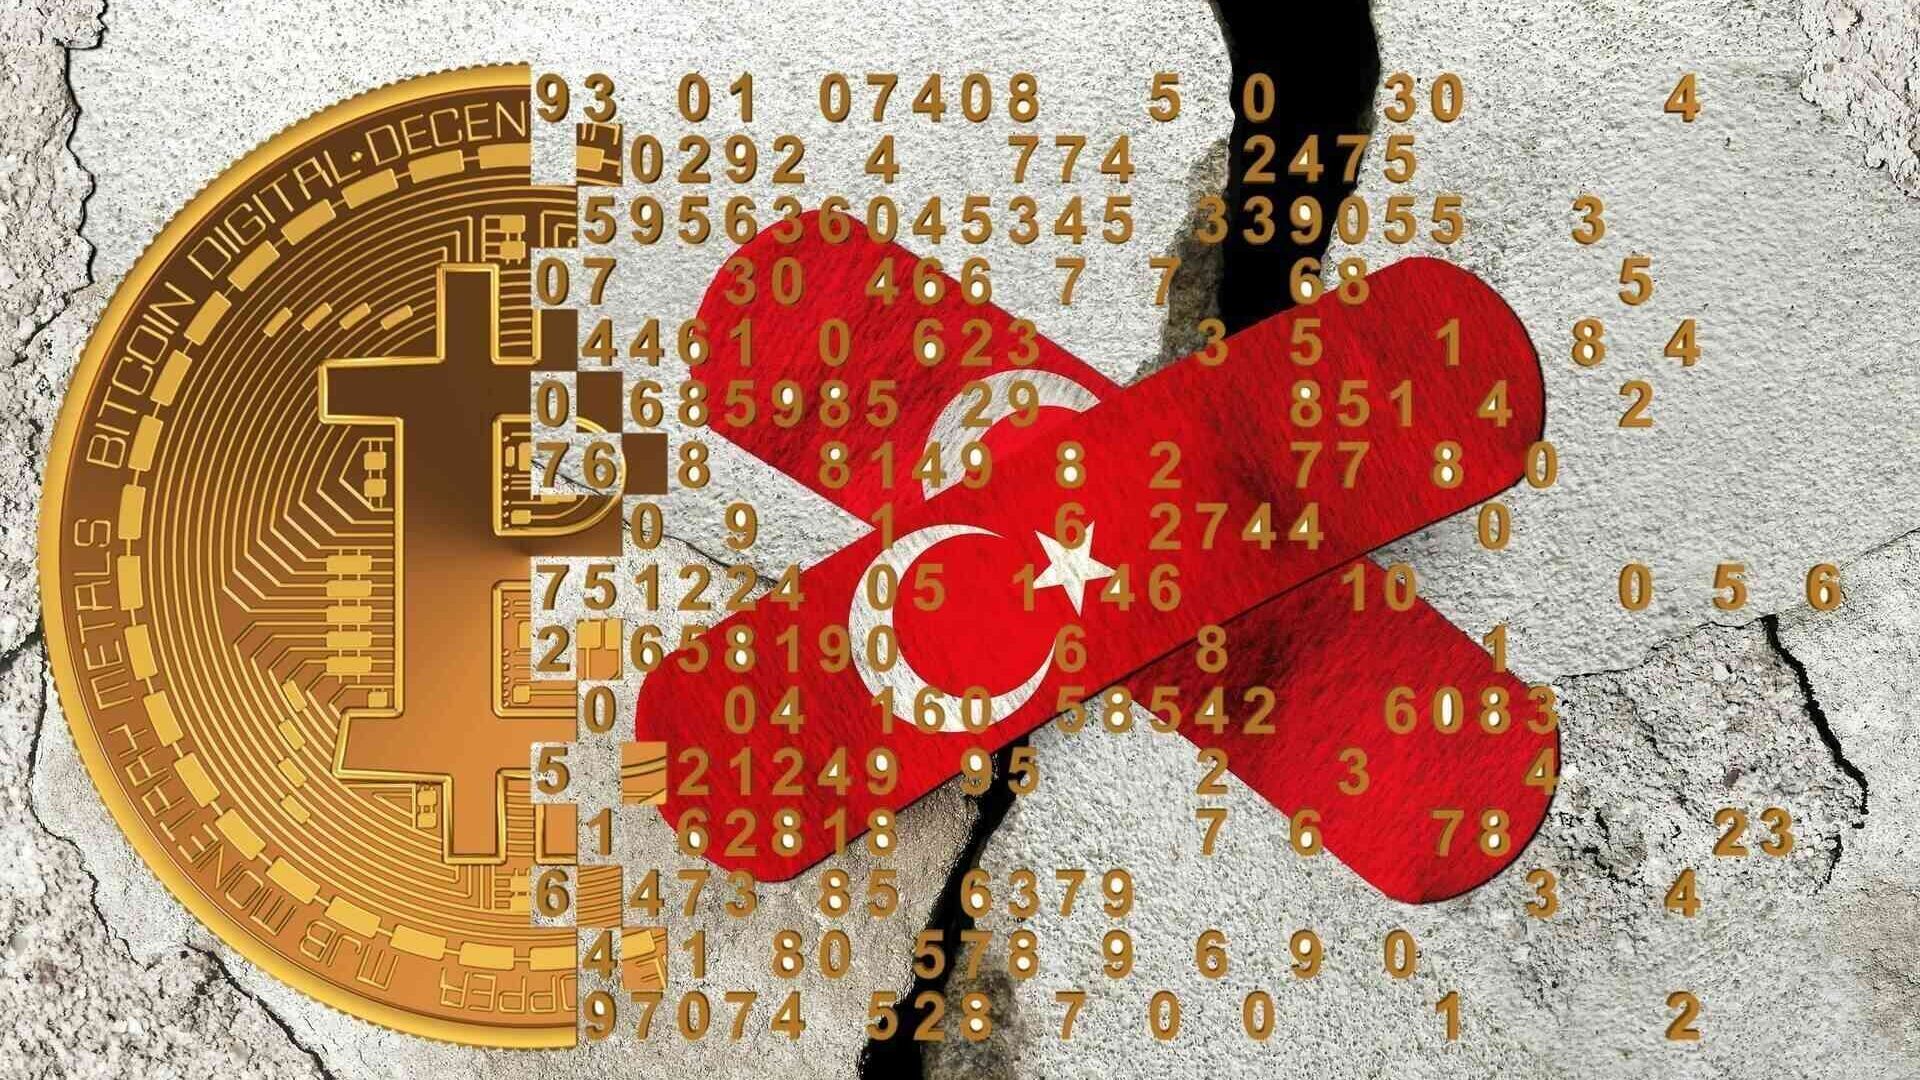 Kripto para birimleri: 5-6 Şubat 2023 tarihleri ​​arasında Güney Anadolu'da meydana gelen şiddetli depremin ardından, küresel kripto para birimi ve Blockchain endüstrisi de büyük bağışlarla mağdurlara yardım sözü veriyor.